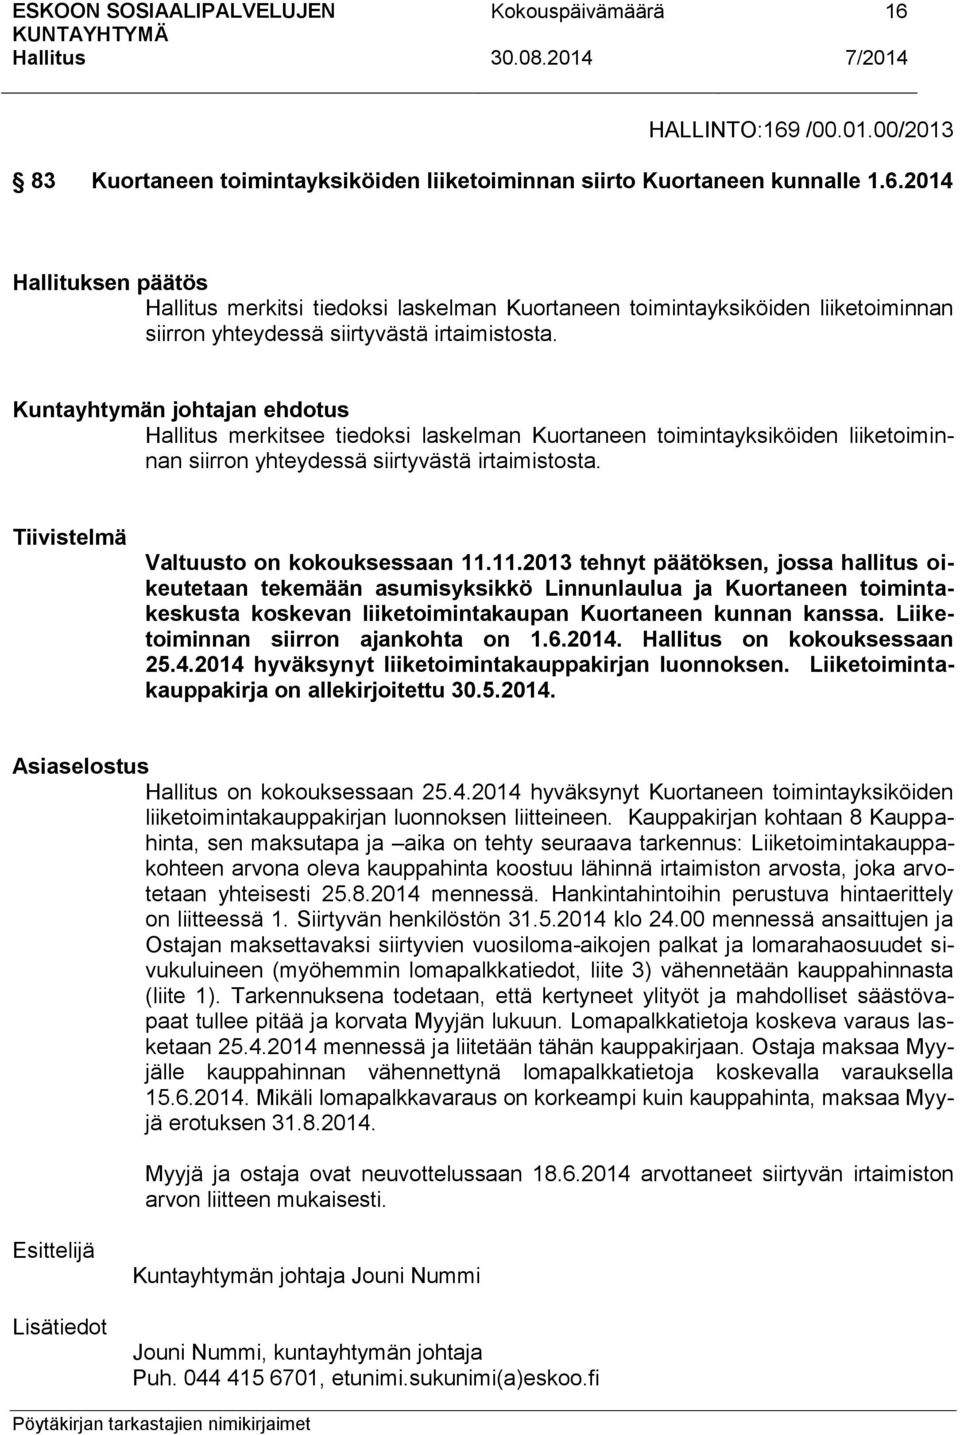 11.2013 tehnyt päätöksen, jossa hallitus oikeutetaan tekemään asumisyksikkö Linnunlaulua ja Kuortaneen toimintakeskusta koskevan liiketoimintakaupan Kuortaneen kunnan kanssa.